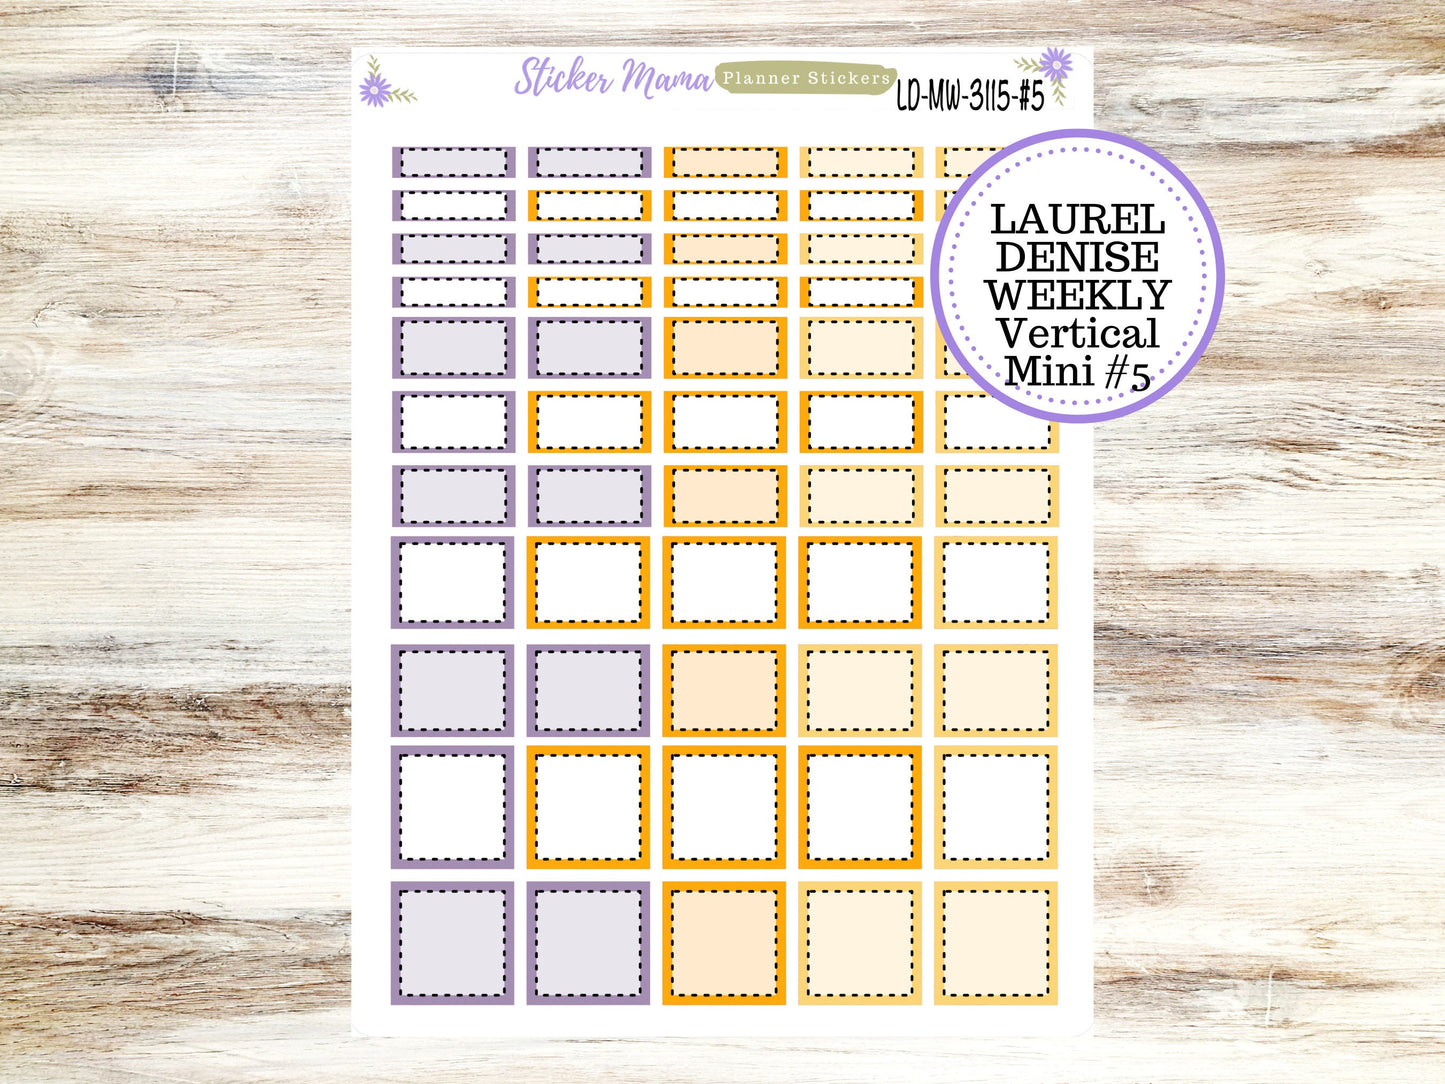 LAUREL DENISE MINI Planner Kit #3115 || Laurel Denise Kit || Laurel Denise Stickers || Laurel Denise Horizontal Vertical || October